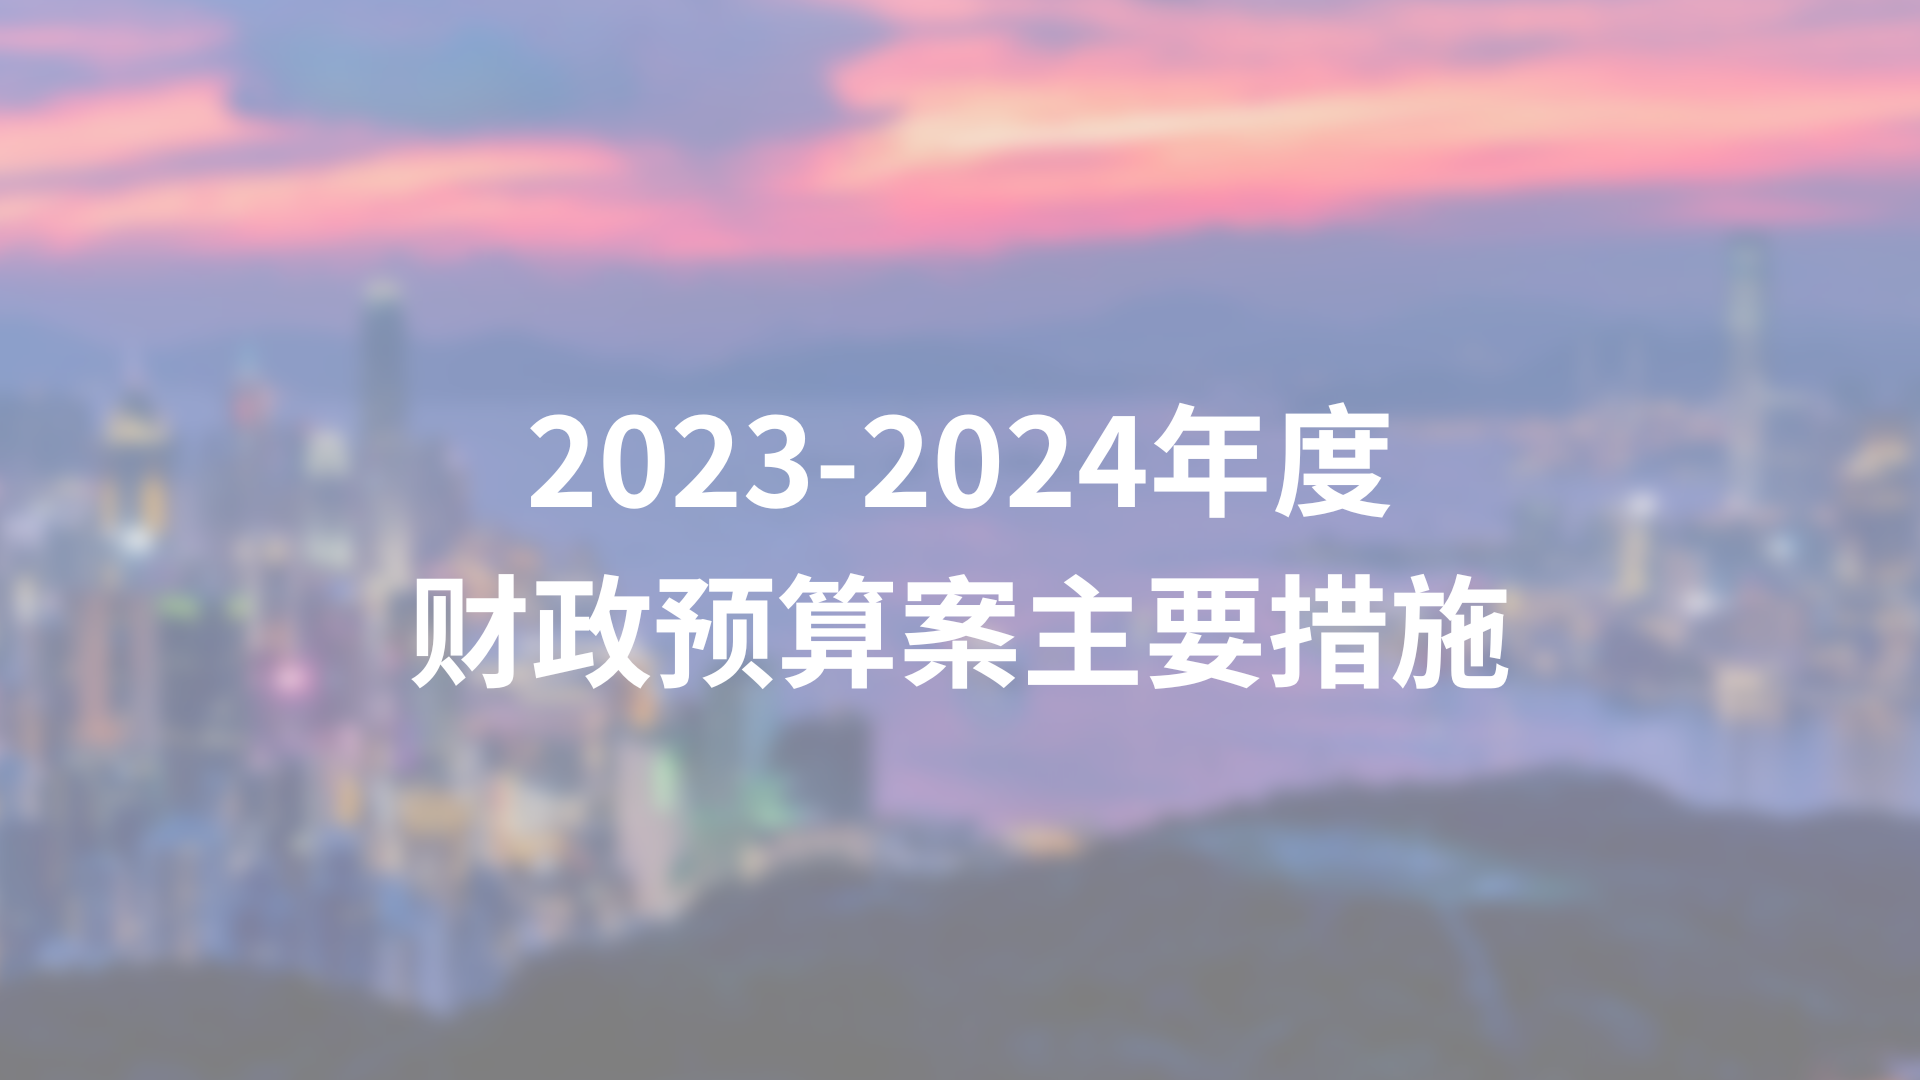 2021-2022年度財政預算案主要措施